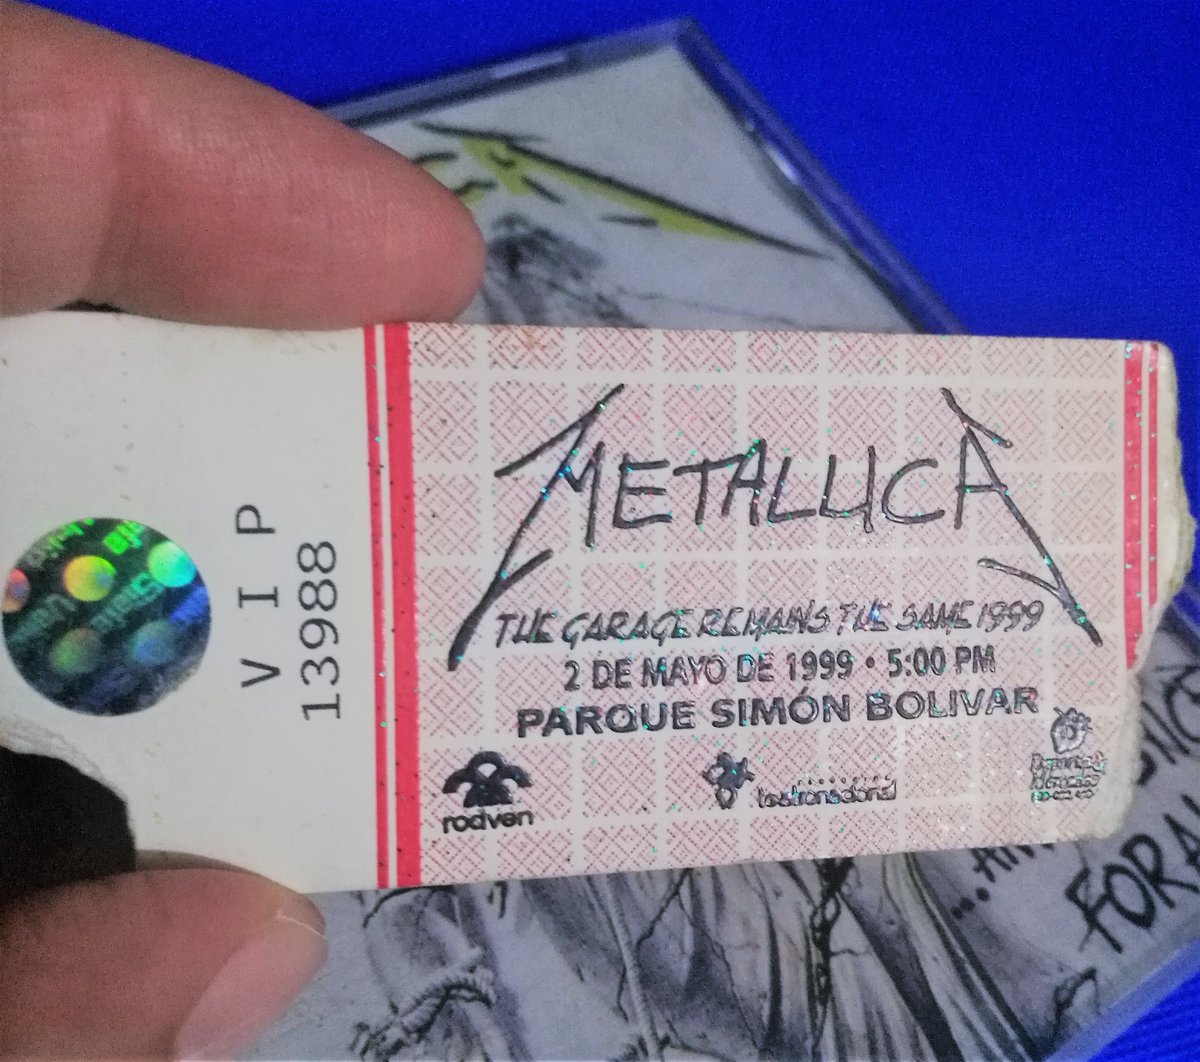 Un 'recuerdito' que tengo con #Metallica, el primer concierto en #Bogotá en medio de su gira #TheGarageRemainsTheSame #ParqueSimónBolívar 🤘🎸